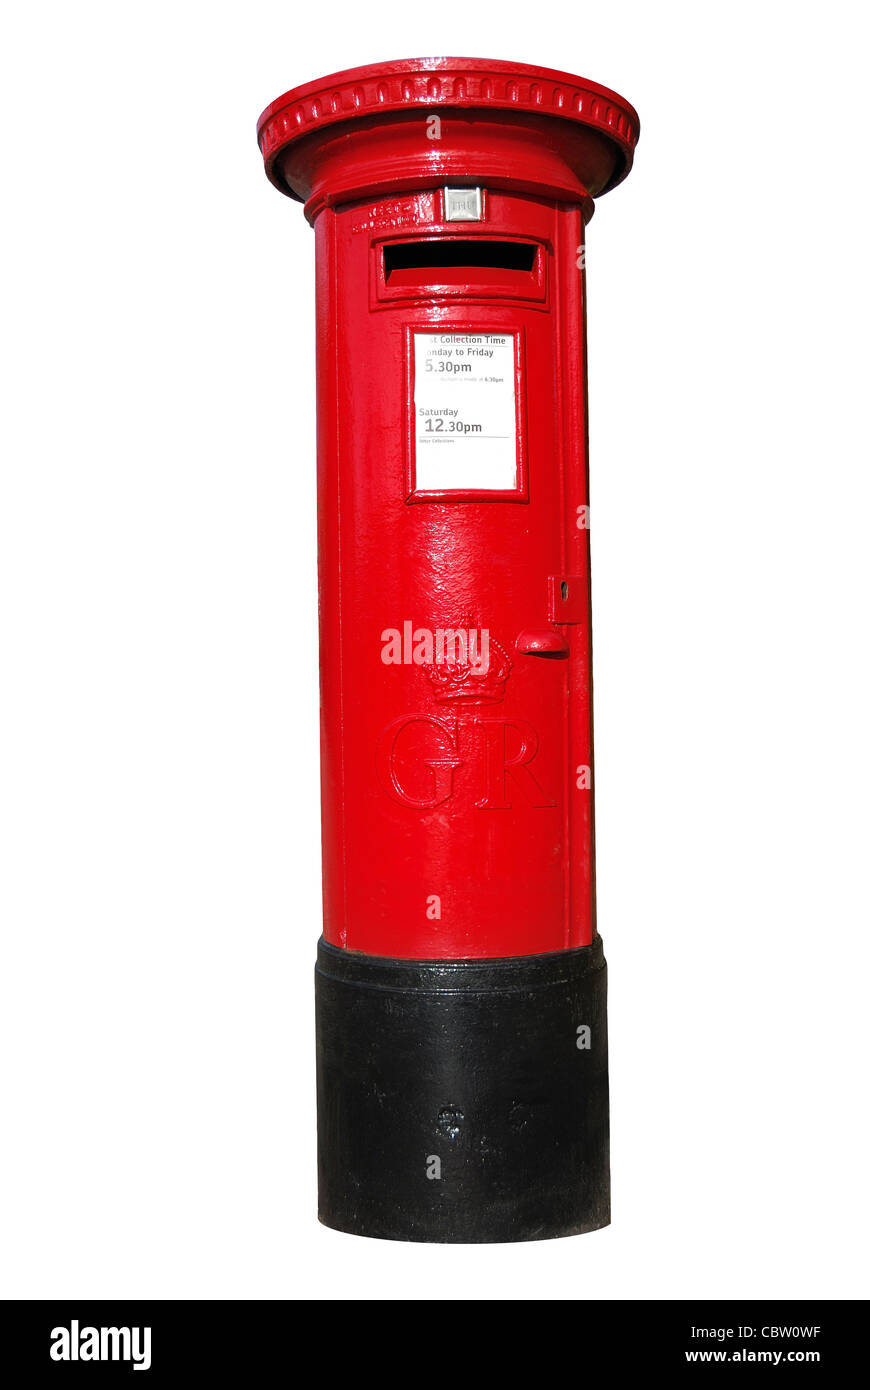 Iconic British Red Post box (Mailbox) on white background Stock Photo